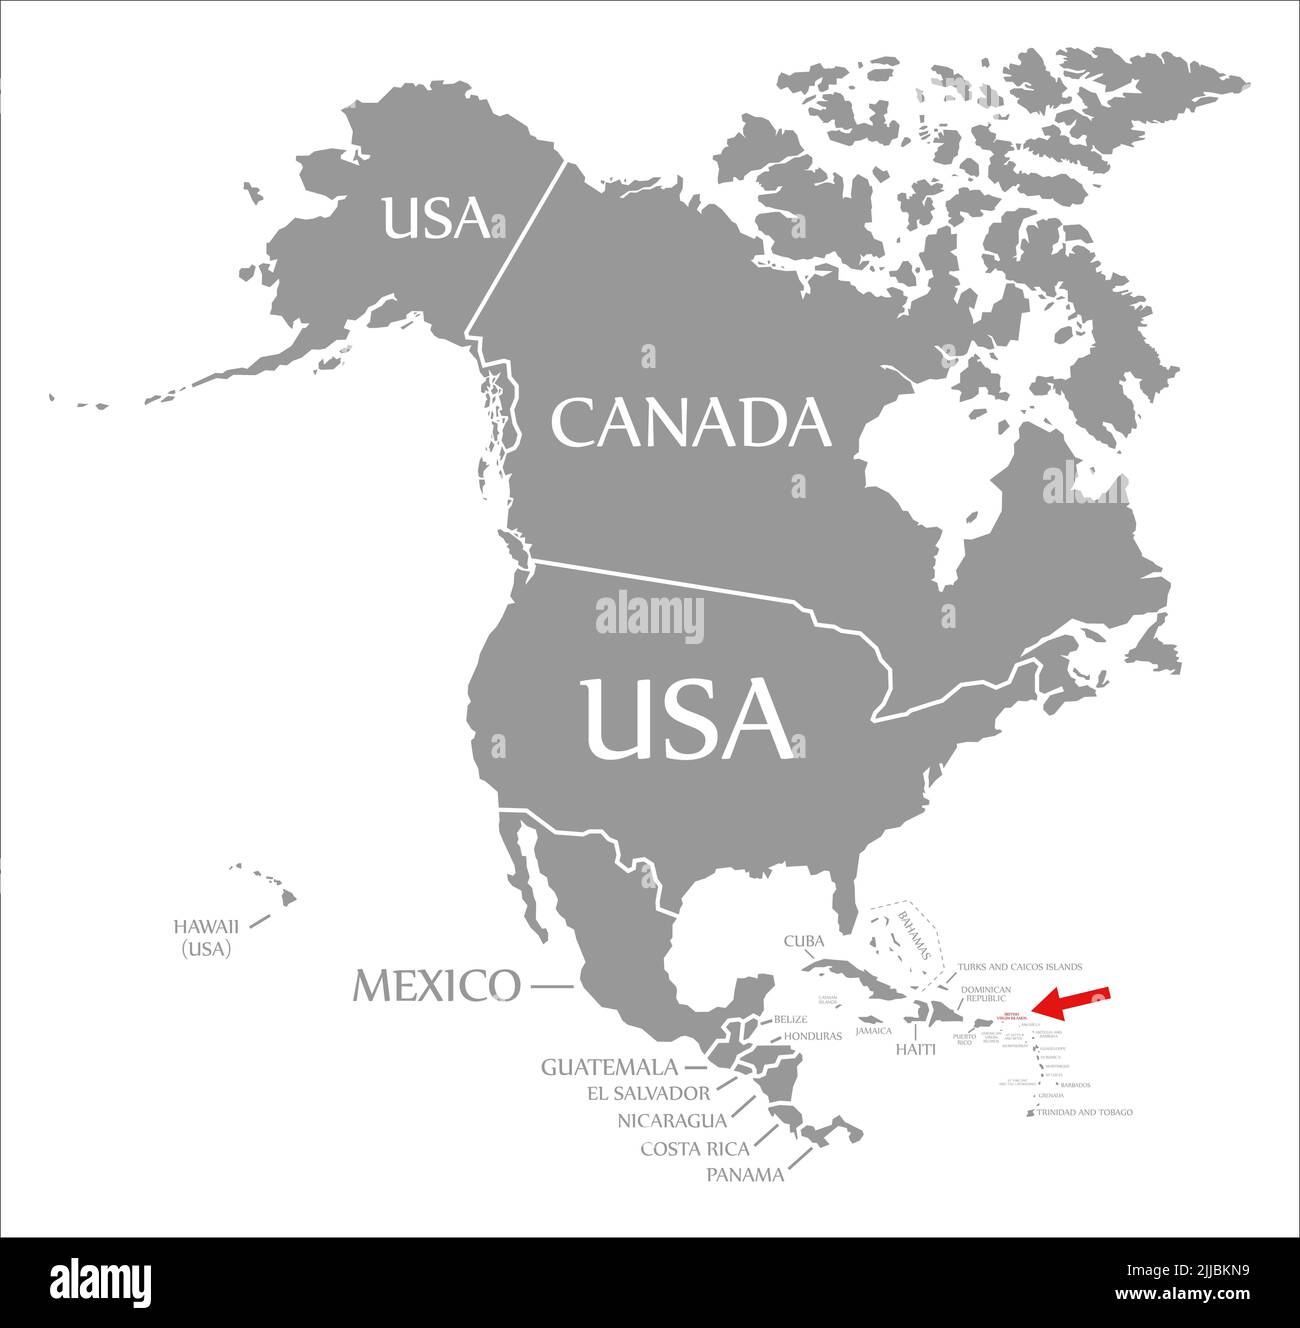 Islas Vírgenes Británicas resaltadas en rojo en el mapa de América del Norte Foto de stock